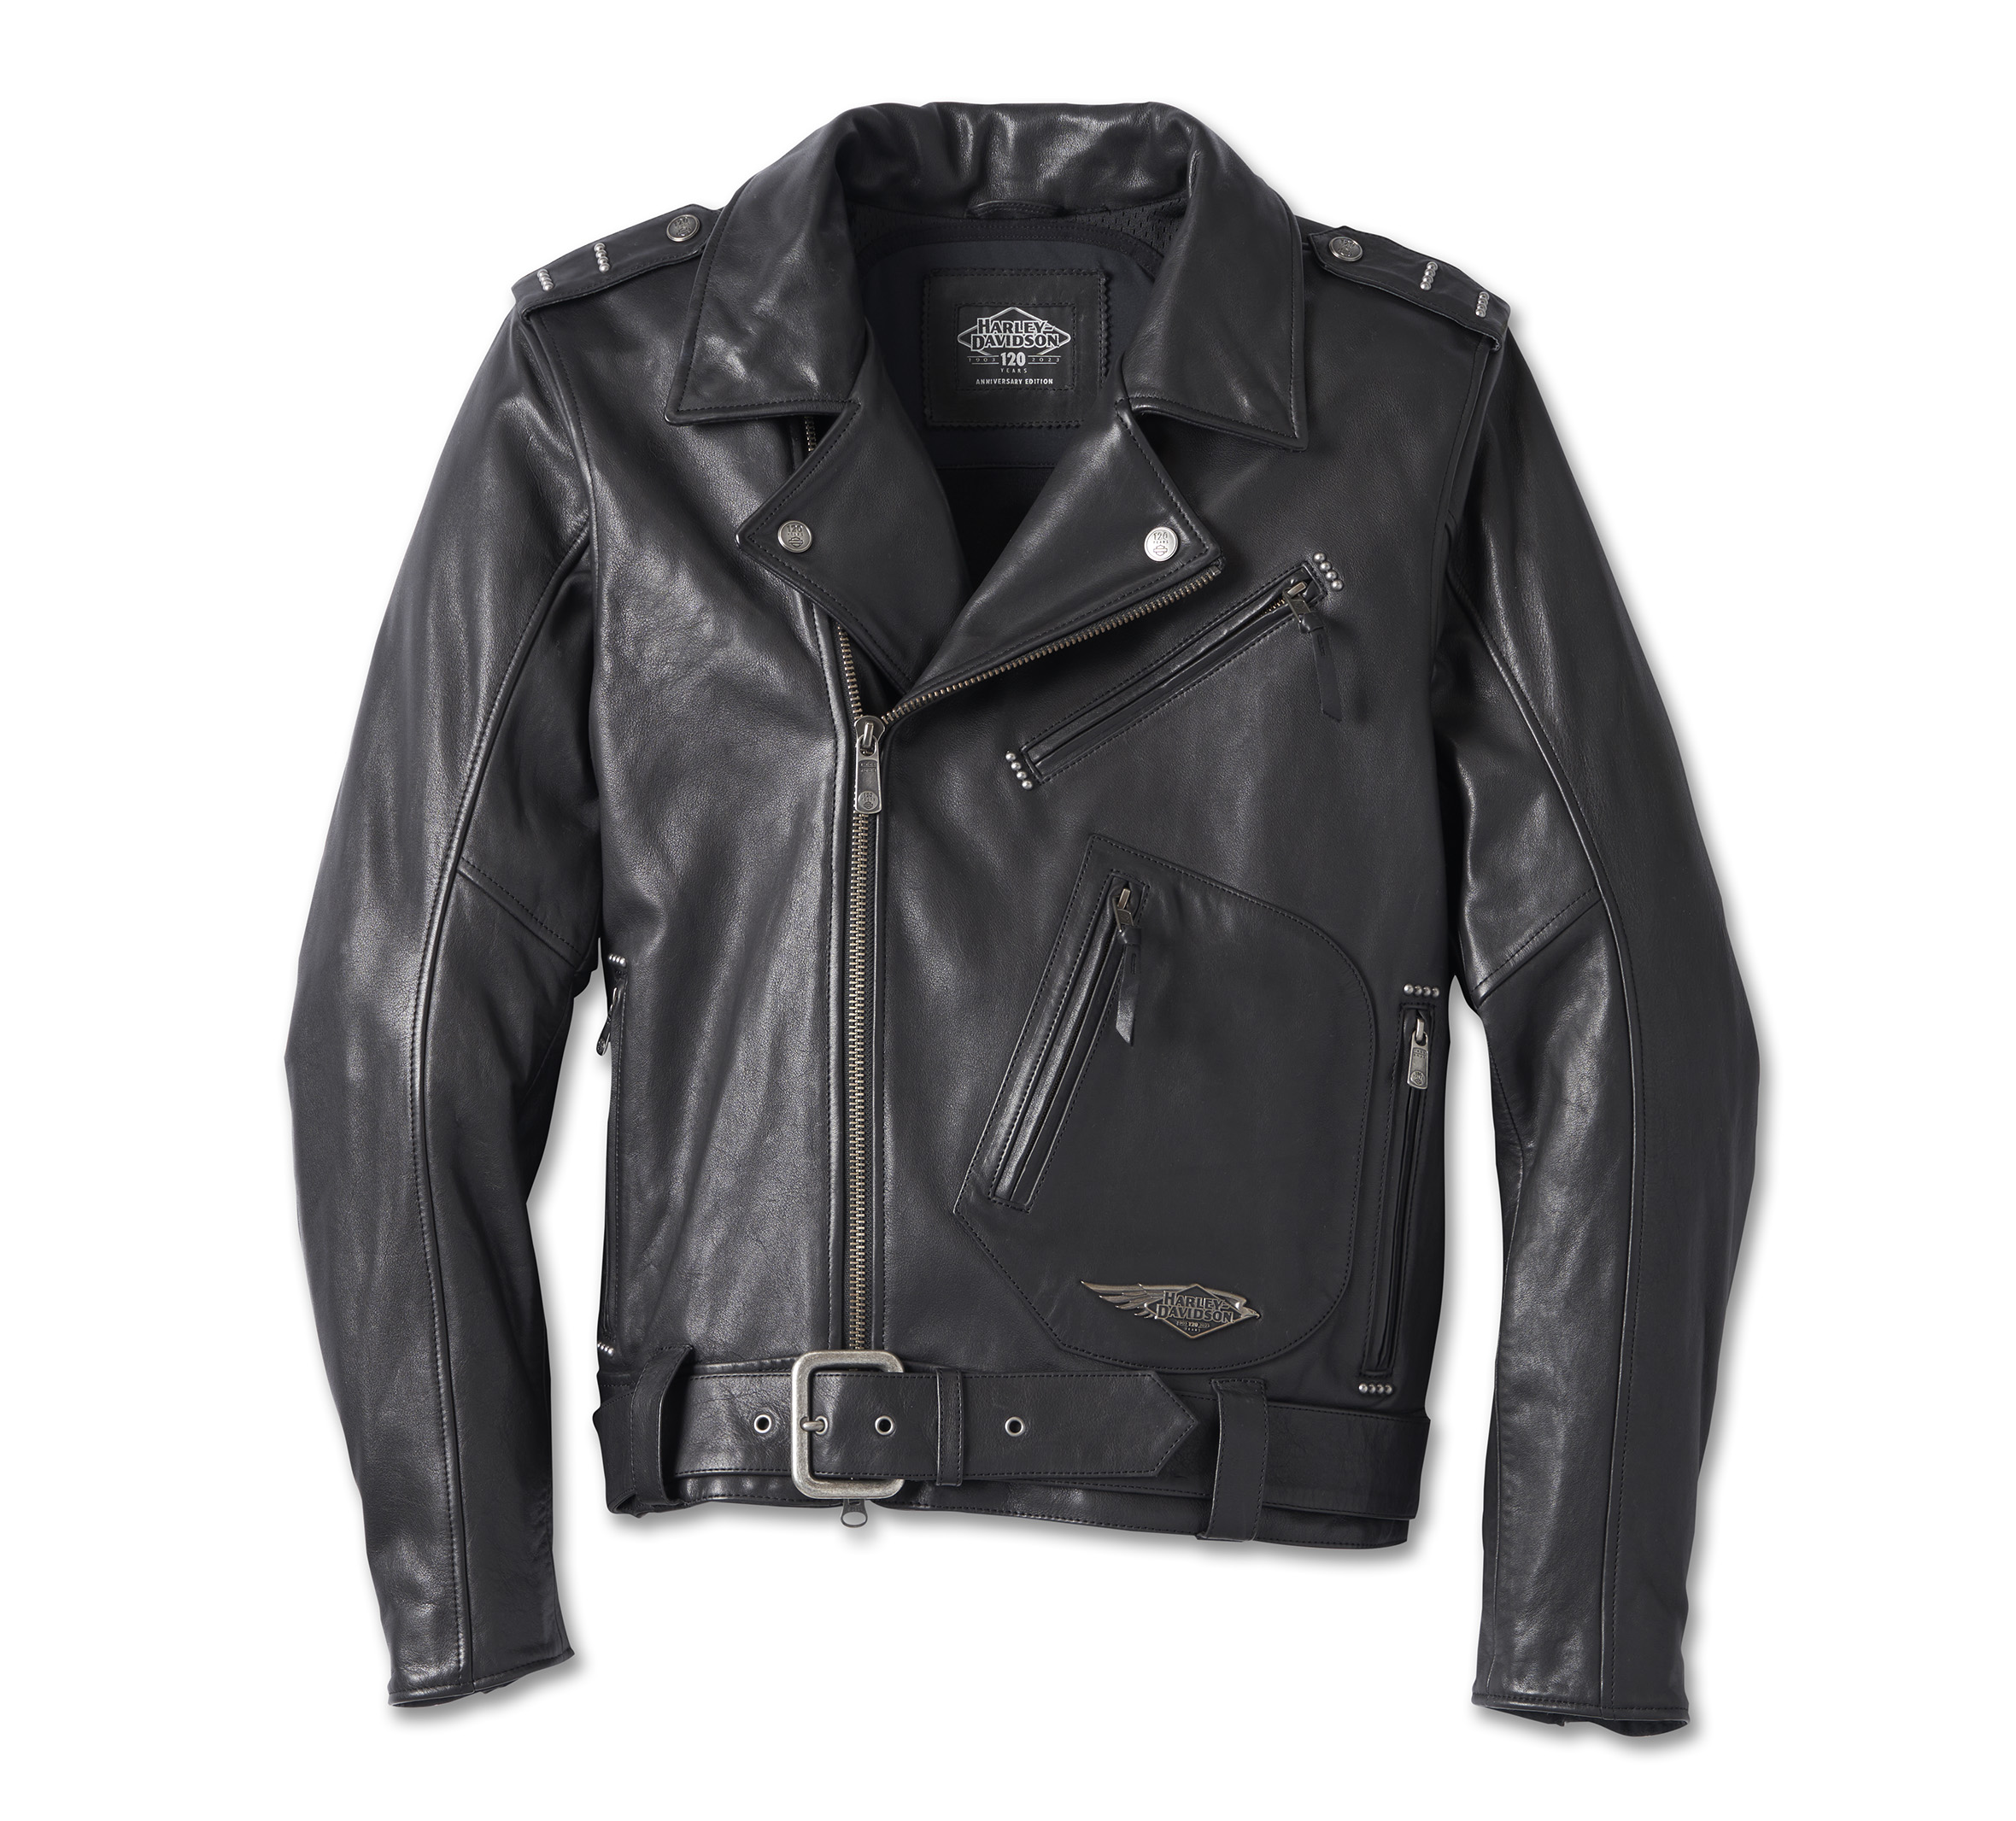 Harley Davidson Leather Jackets For Sale | lupon.gov.ph